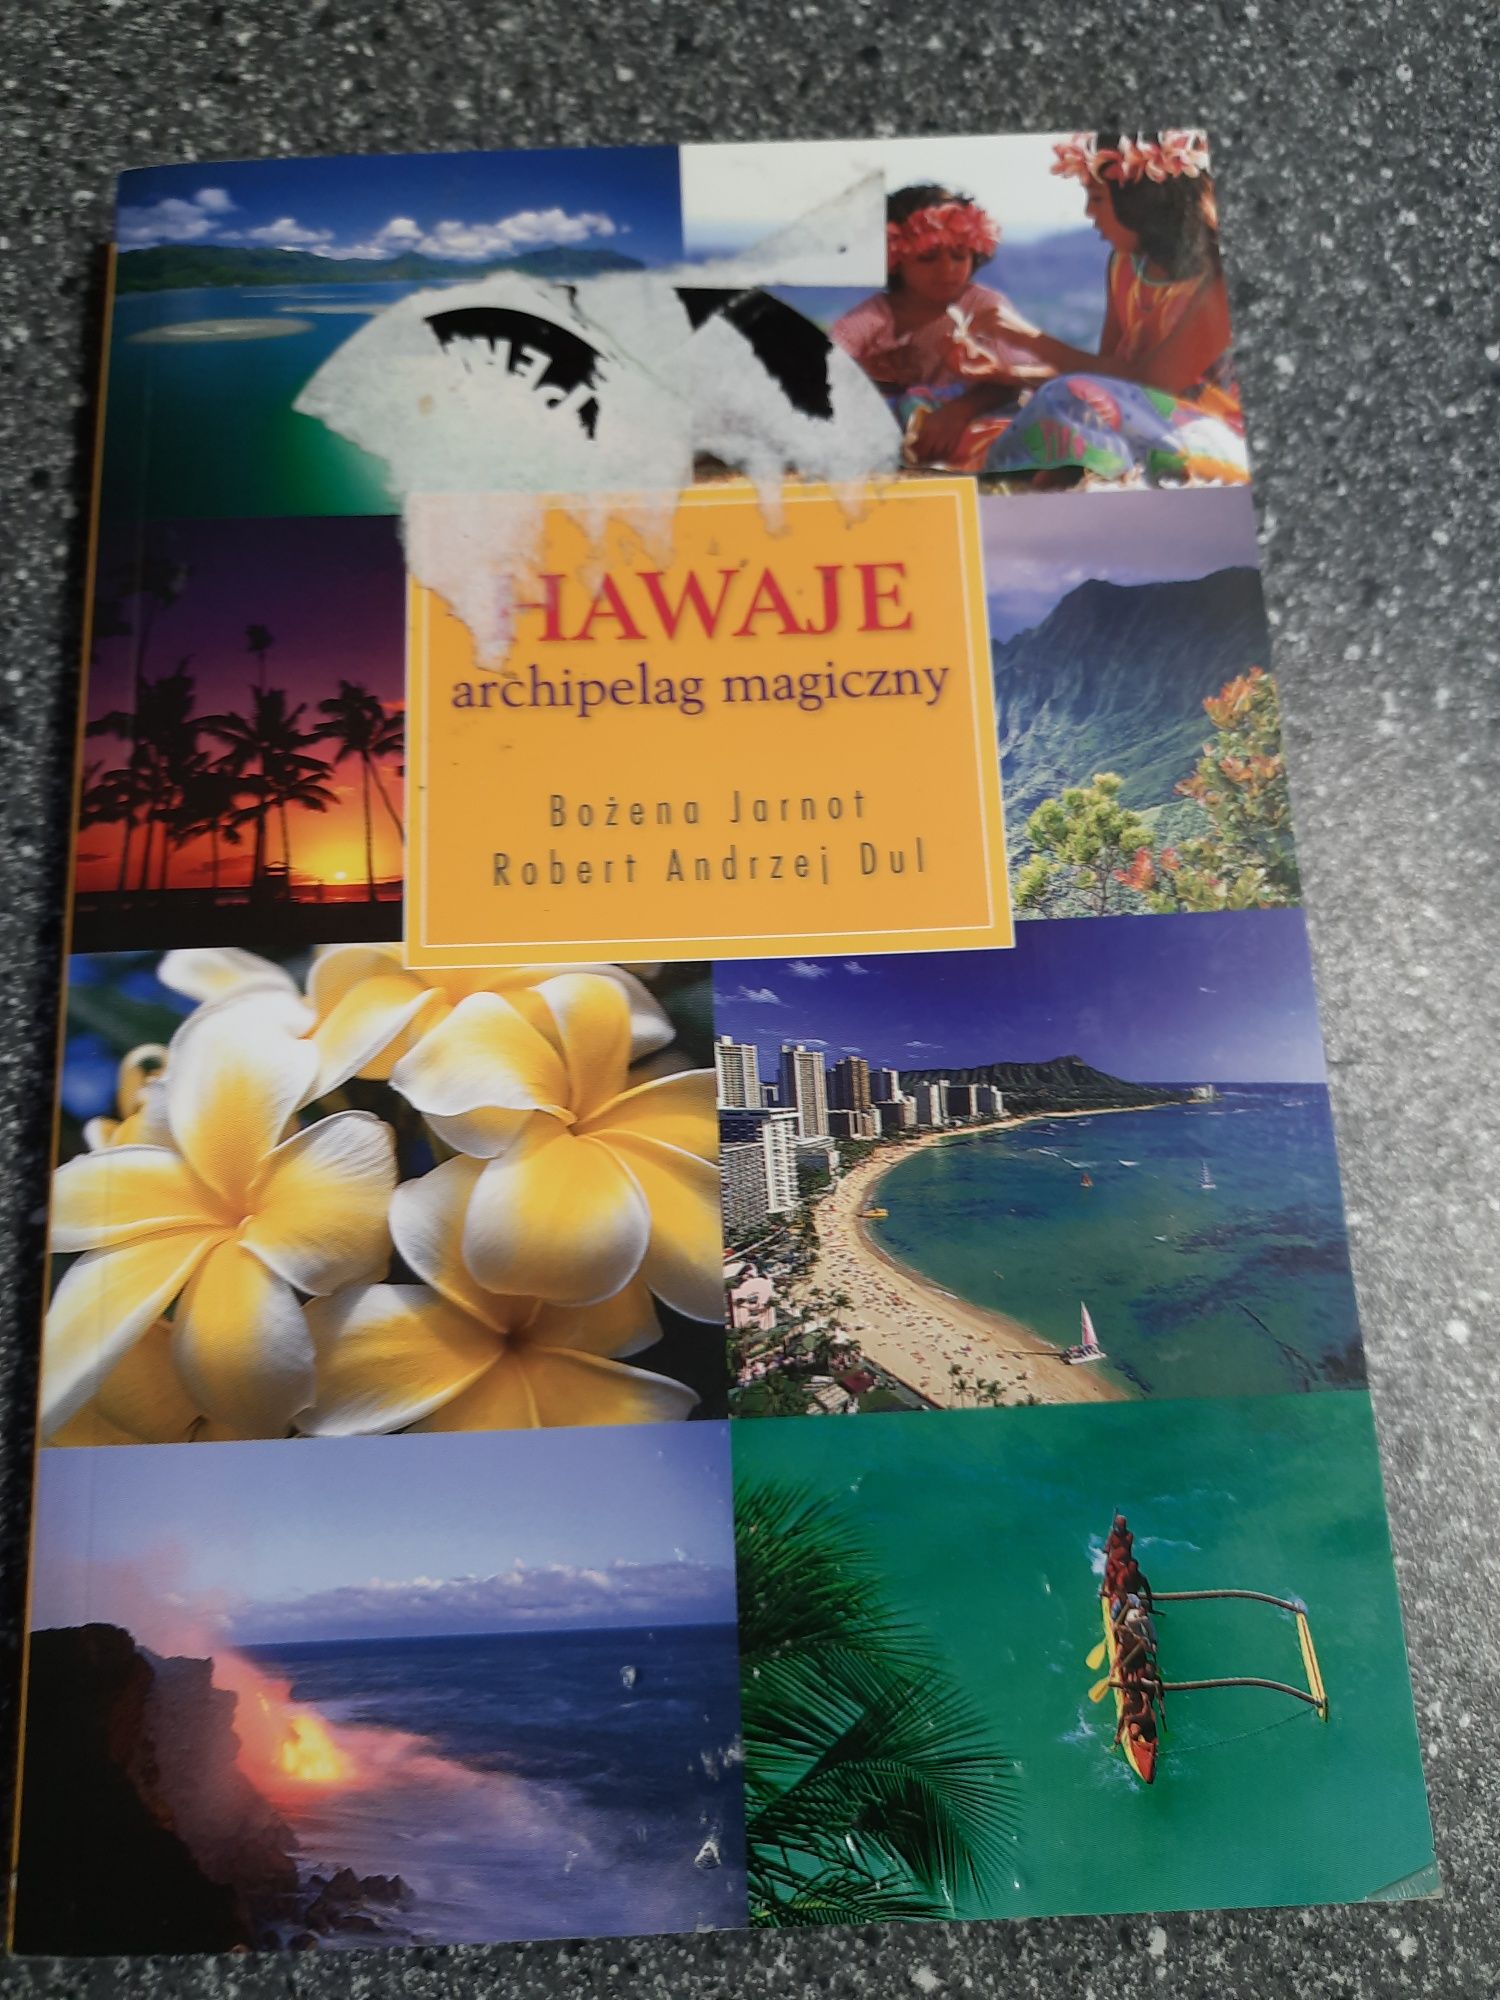 Hawaje archipelag magiczny